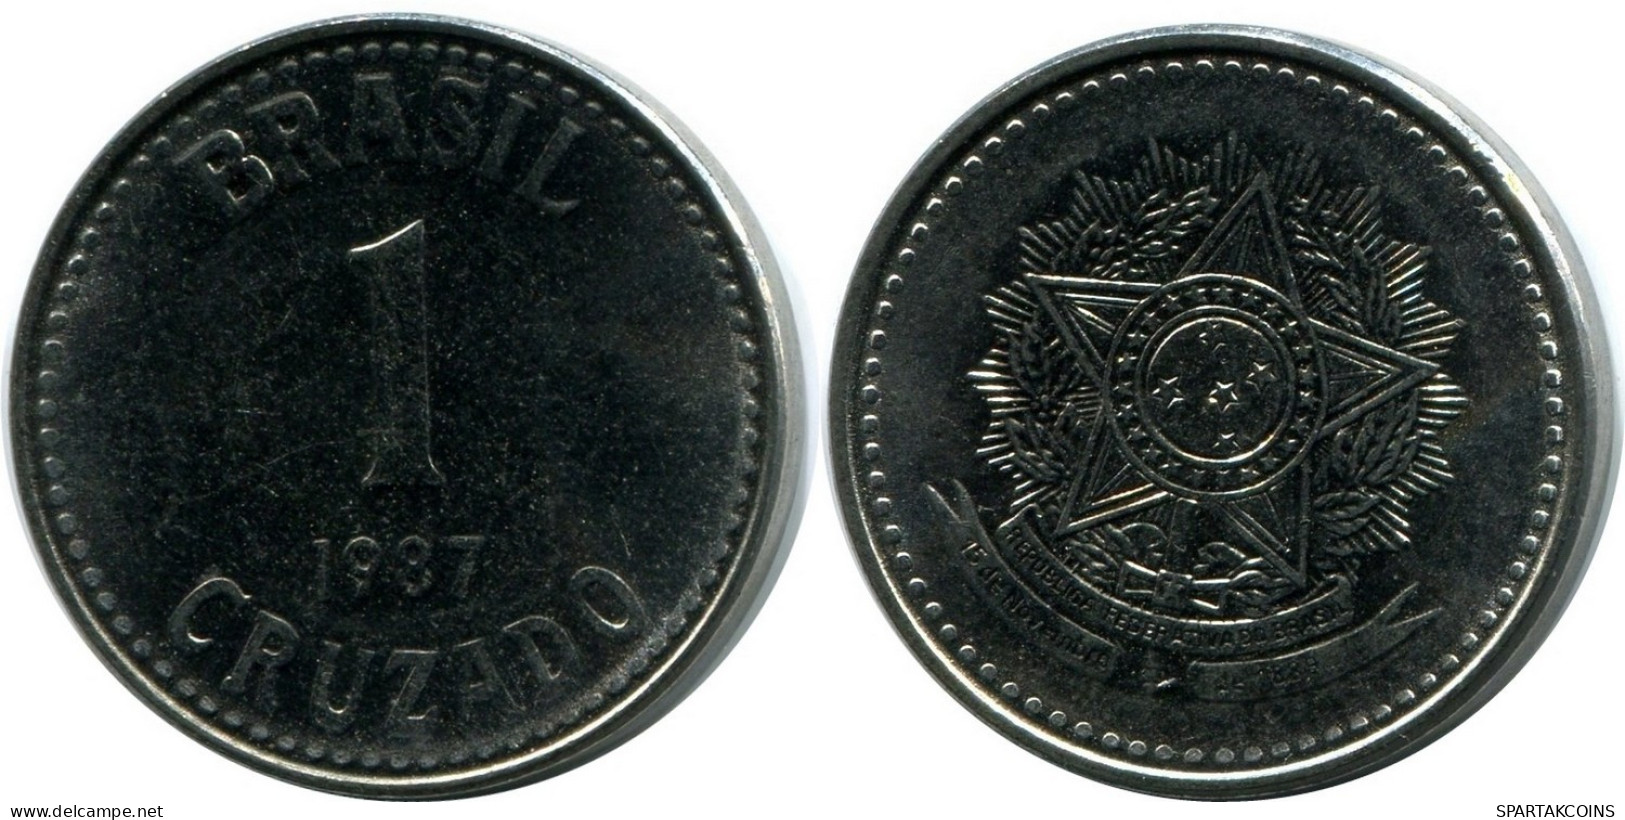 1 CRUZADO 1987 BBASIL BRAZIL Moneda UNC #M10275.E.A - Brazilië